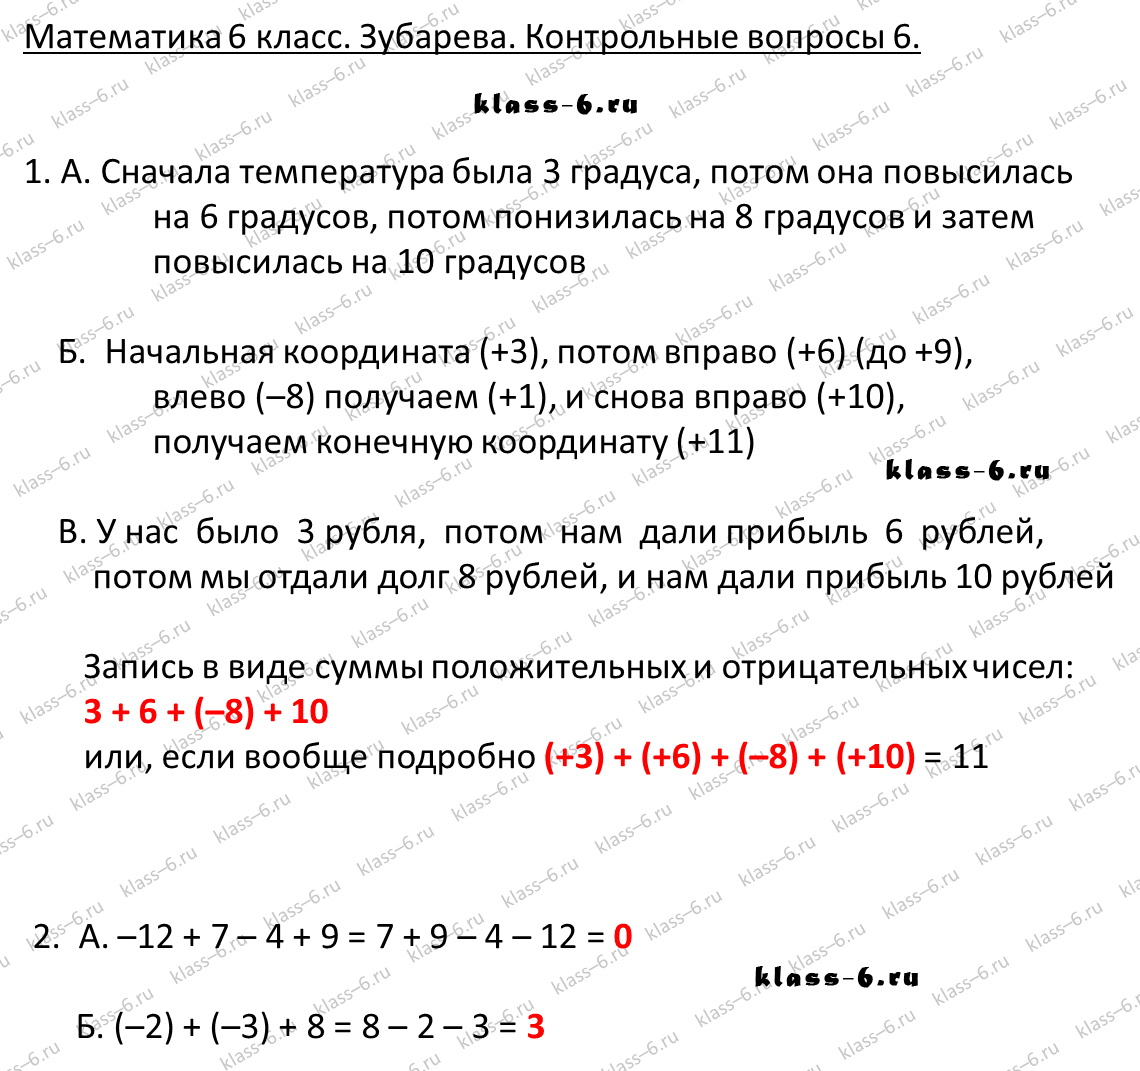 гдз математика Зубарева 6 класс ответ и подробное решение с объяснениями контрольных вопросов к параграфу № 6